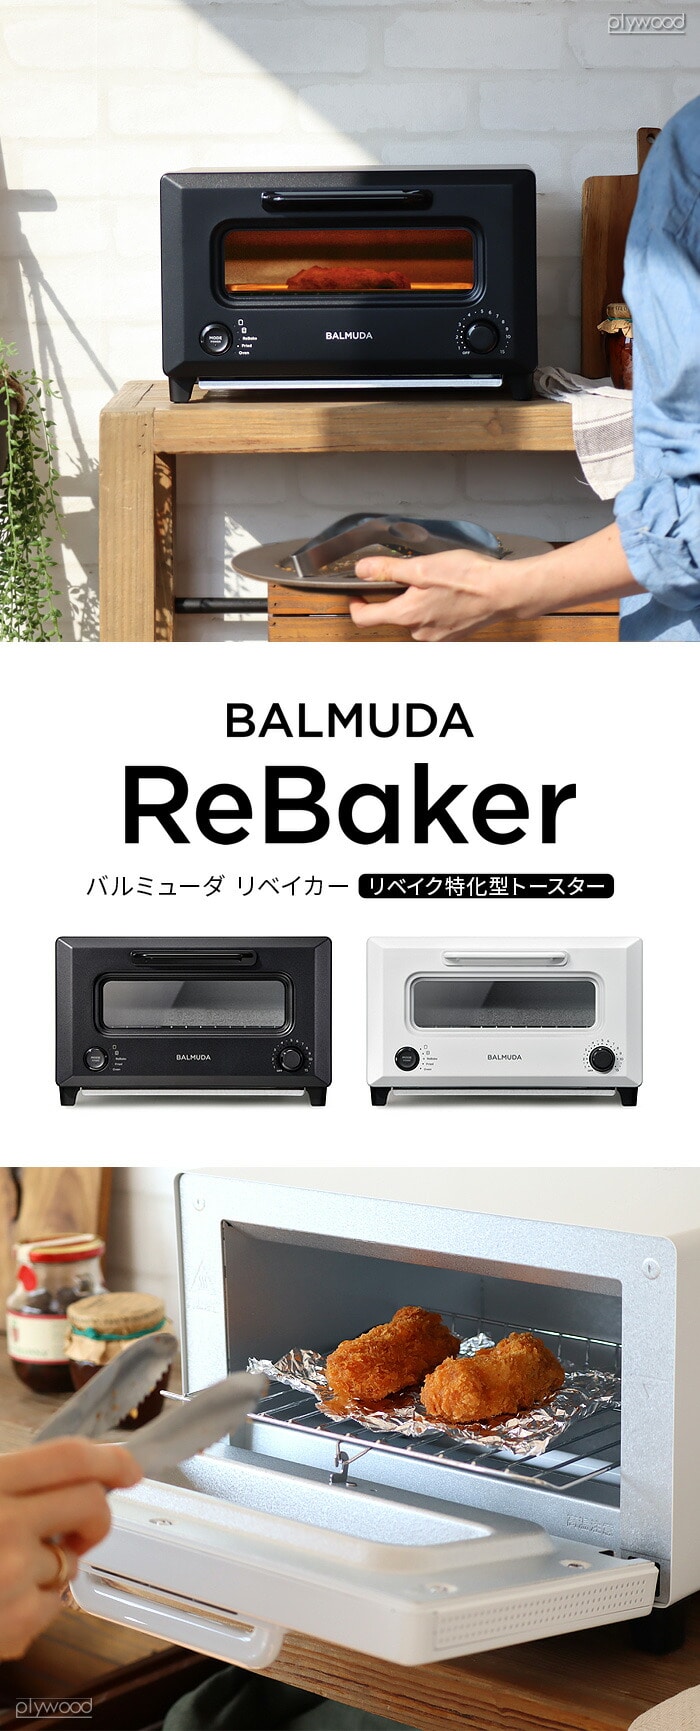 正規店 30日間全額返金保証 バルミューダ リベーカー BALMUDA ReBaker ...